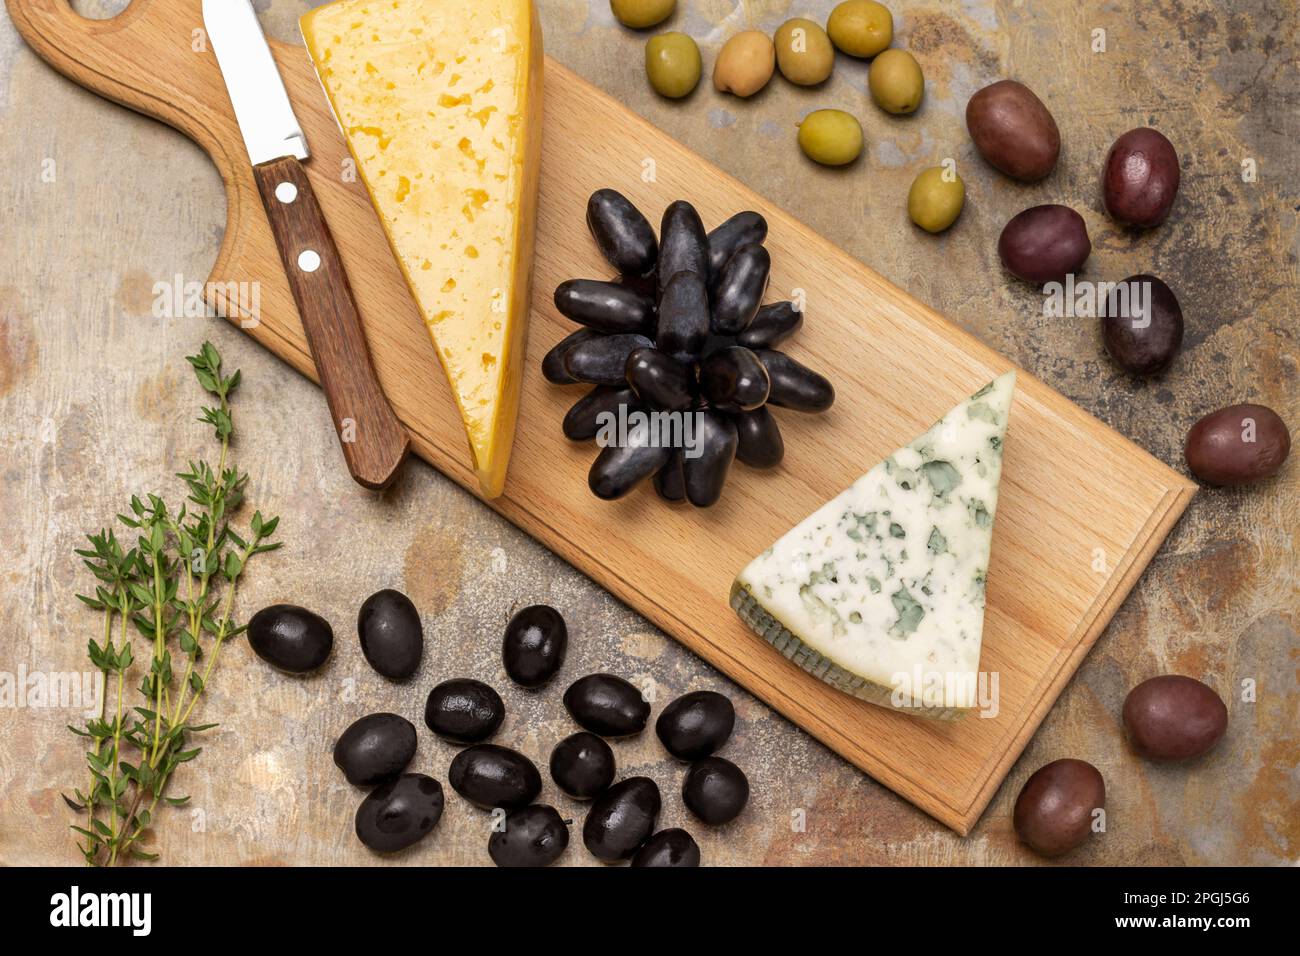 Blauschimmelkäse, Trauben und Messer auf dem Brett. Oliven und Thymianzweig auf dem Tisch. Rostiger Hintergrund. Stockfoto